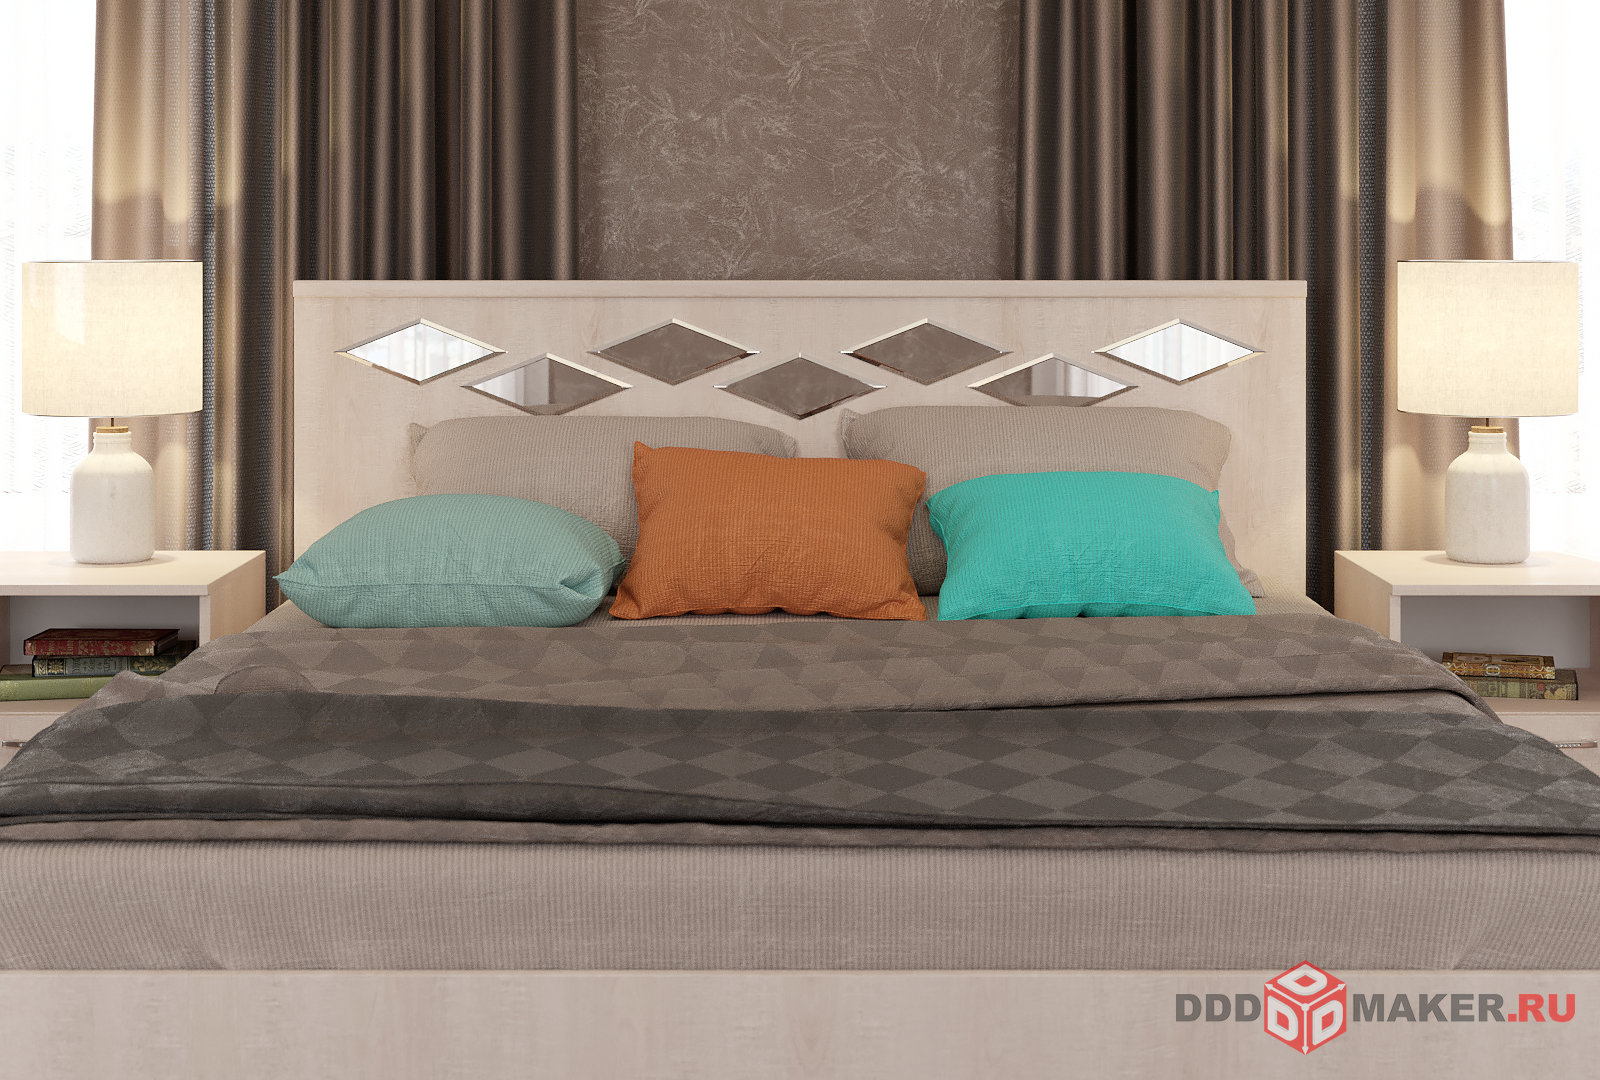 Мебель для спальни - моделирование и визуализация 5